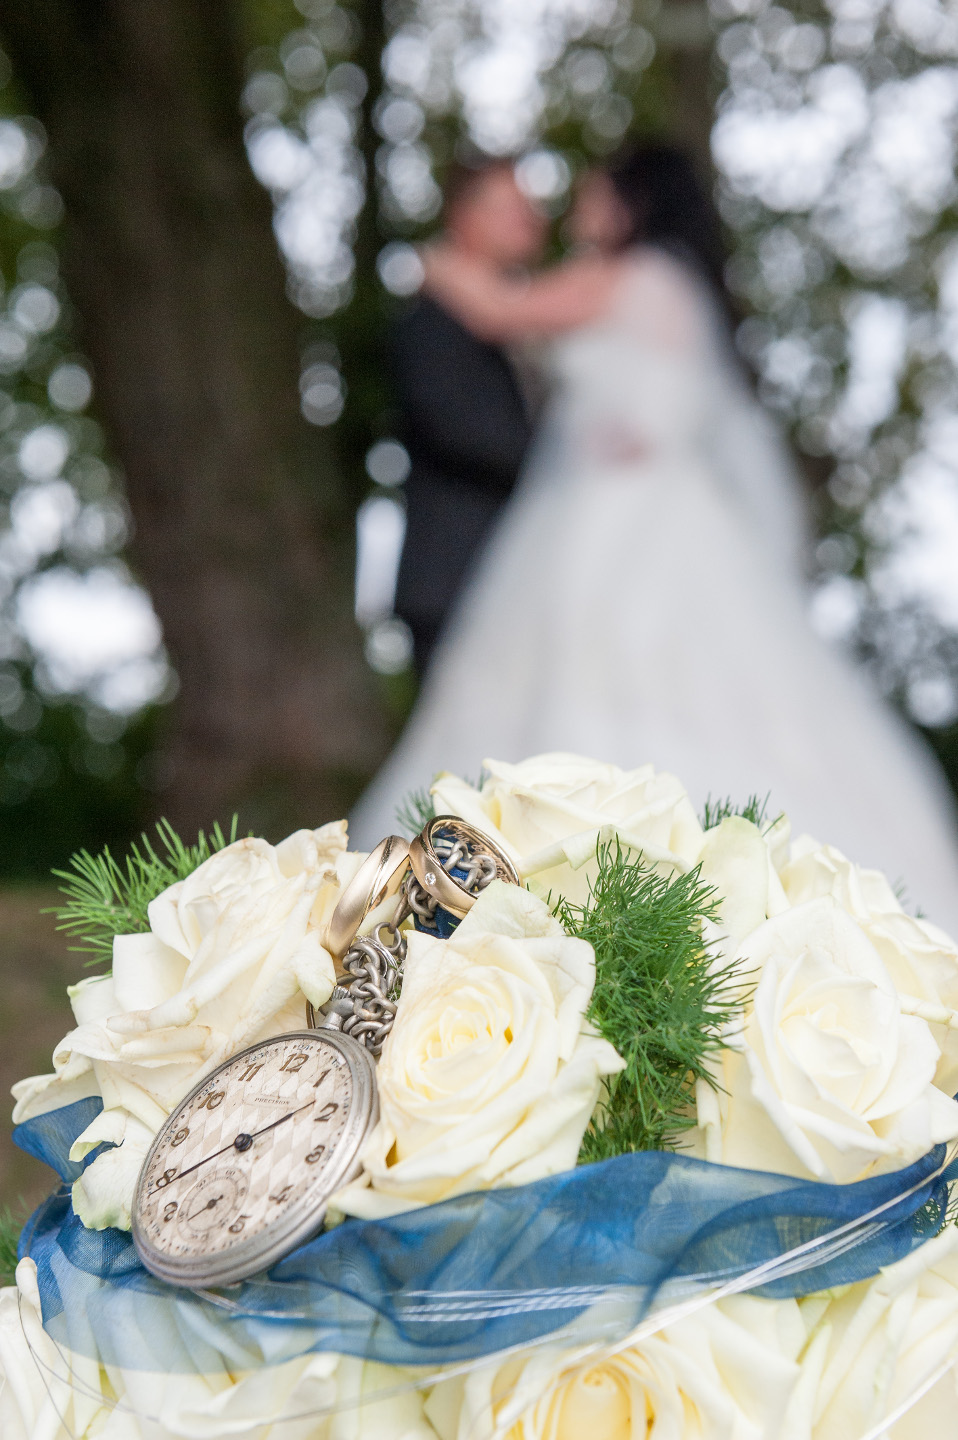 Wunderschönes Hochzeitsfoto mit Brautstrauß im Vordergrund und unscharfem Brautpaar im Hintergrund.